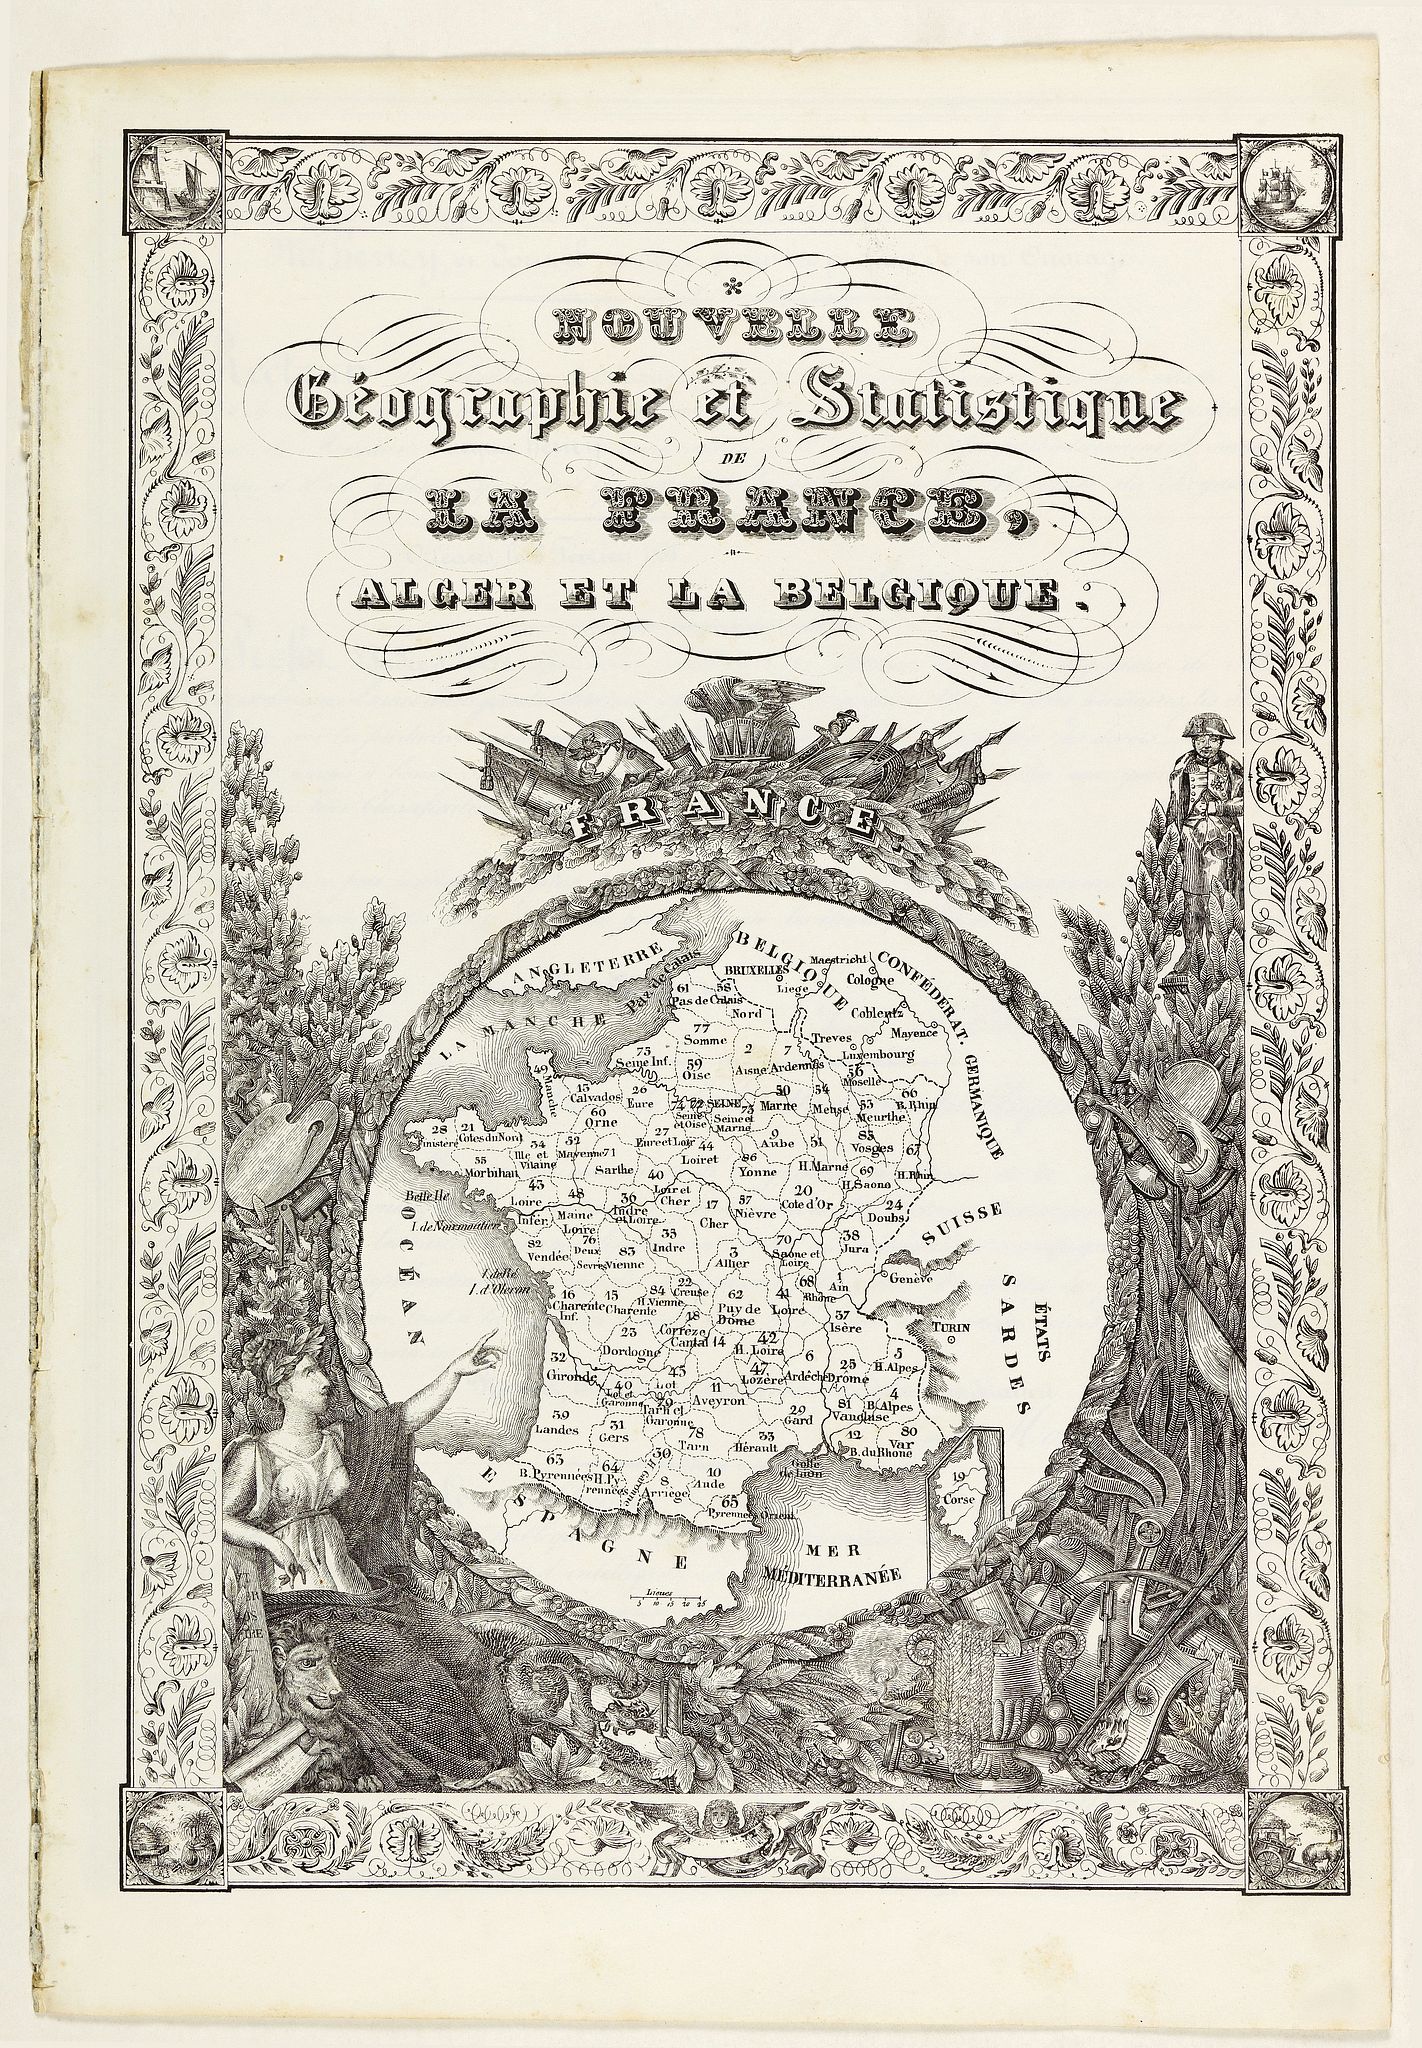 [Title page] Nouvelle gographie et statistique de la France, Alger et la Belgique.